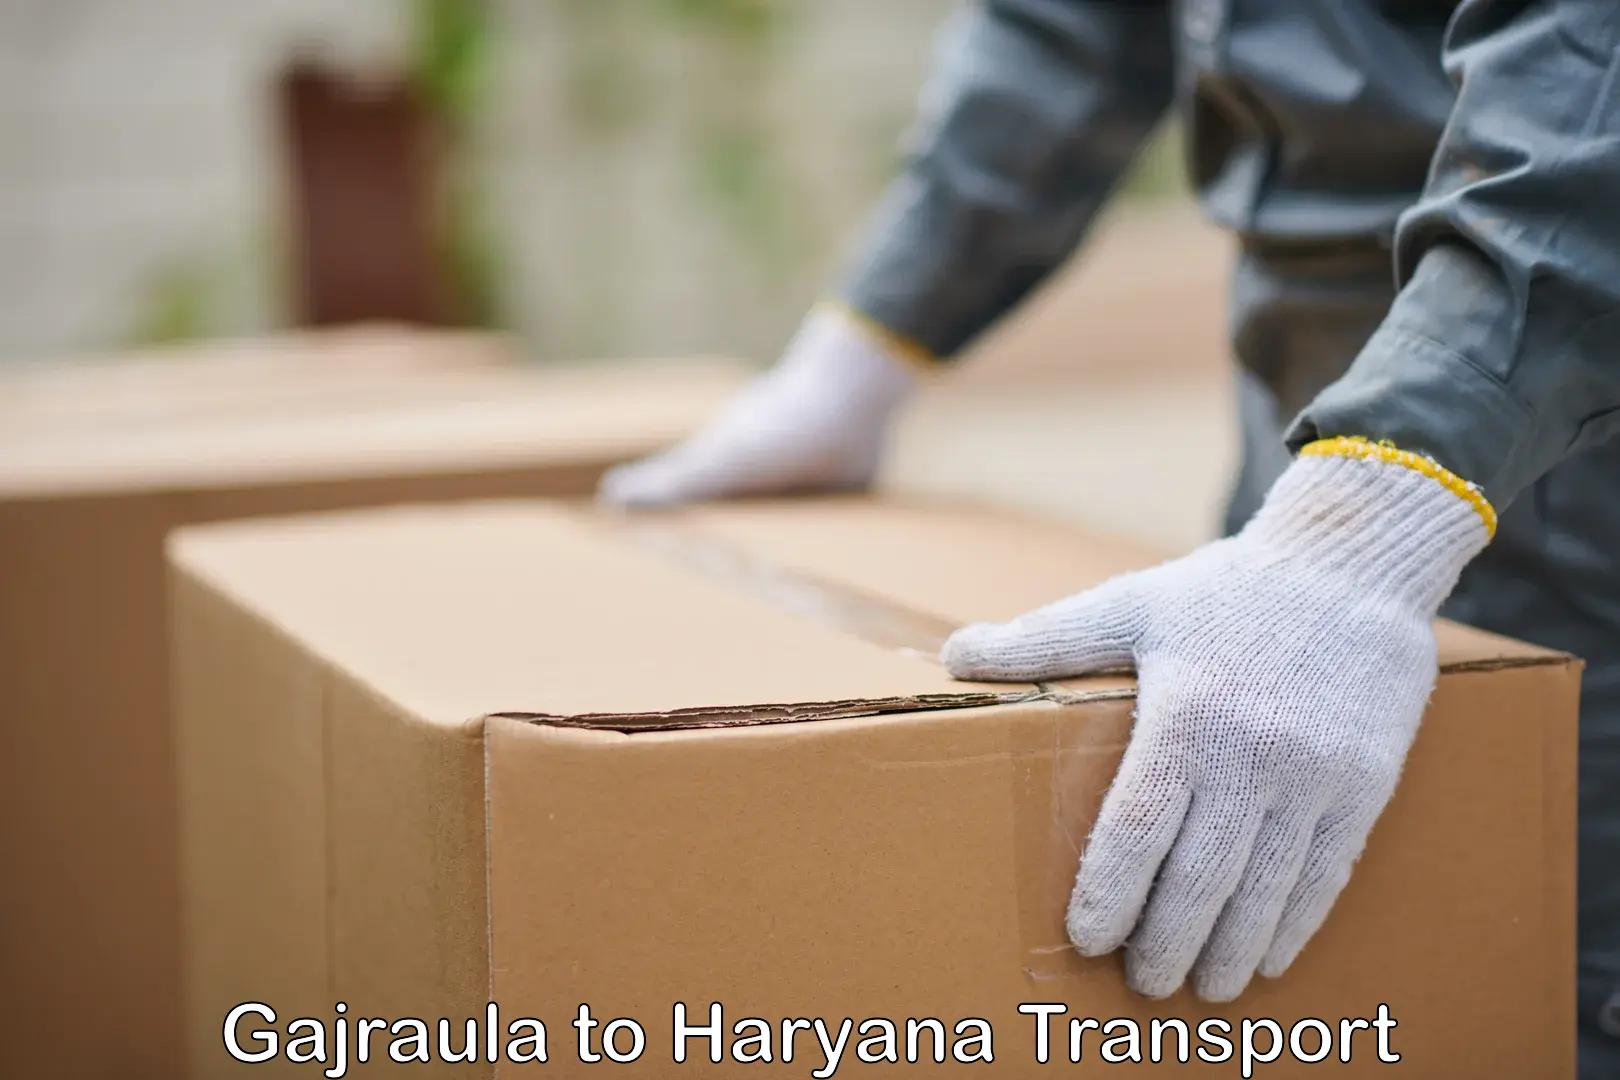 Transport in sharing Gajraula to Dharuhera